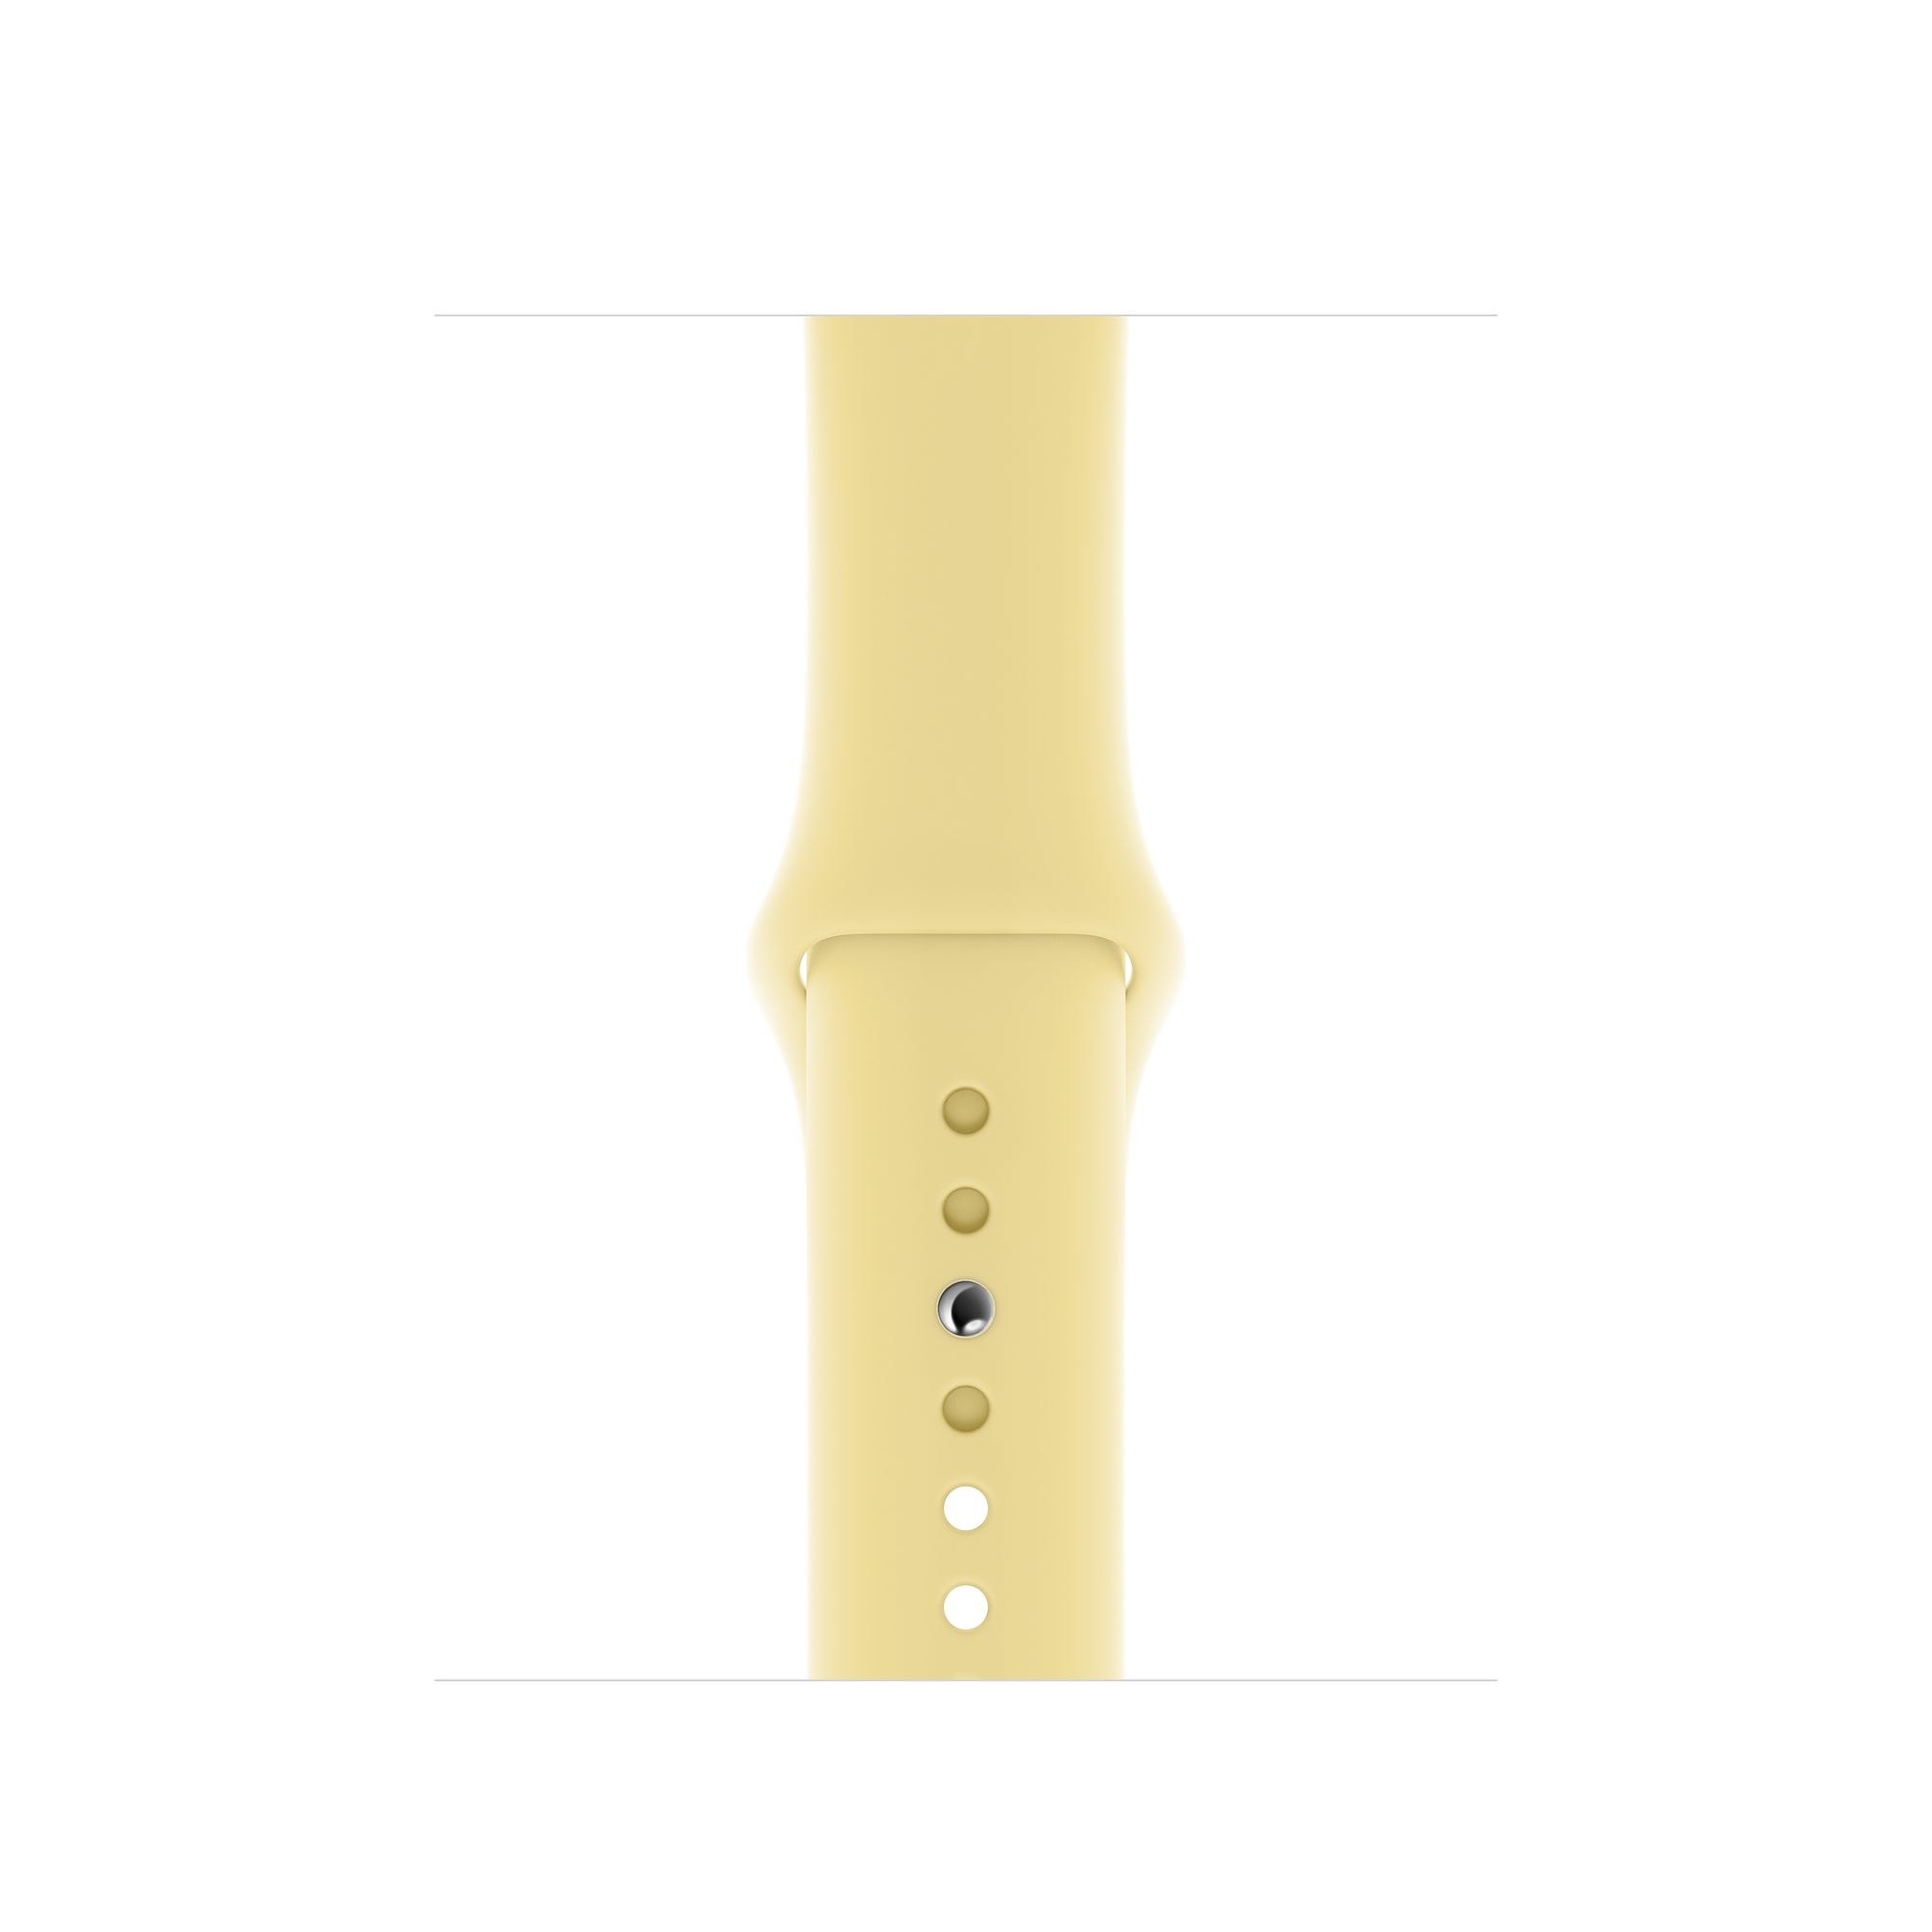 Bracelet sport Apple Watch - crème citron